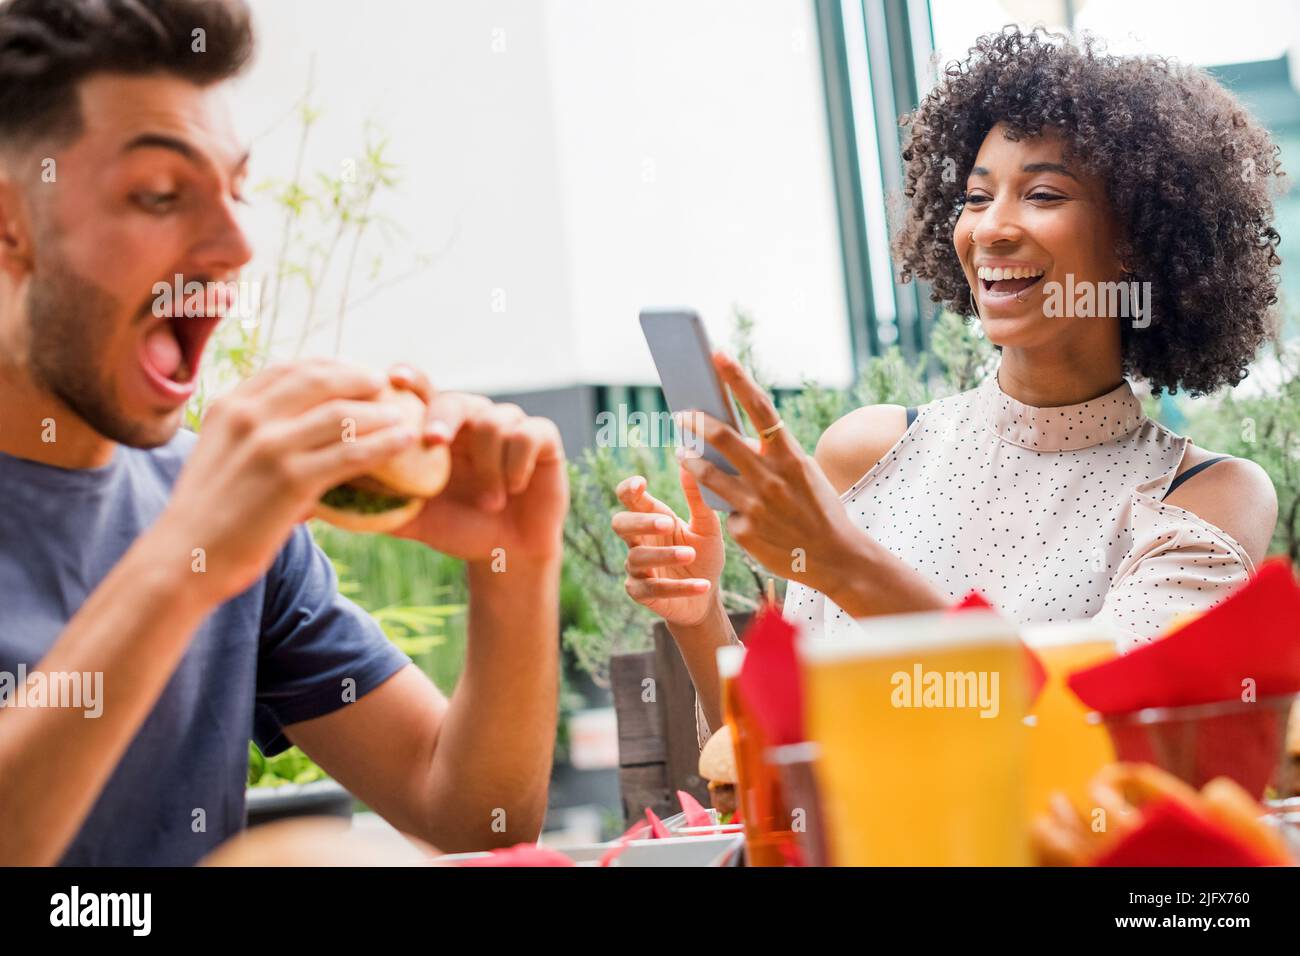 Das junge Paar genießt es, an einem Restauranttisch Fast Food zu essen und lacht, als sie Medien auf ihrem Handy lesen Stockfoto